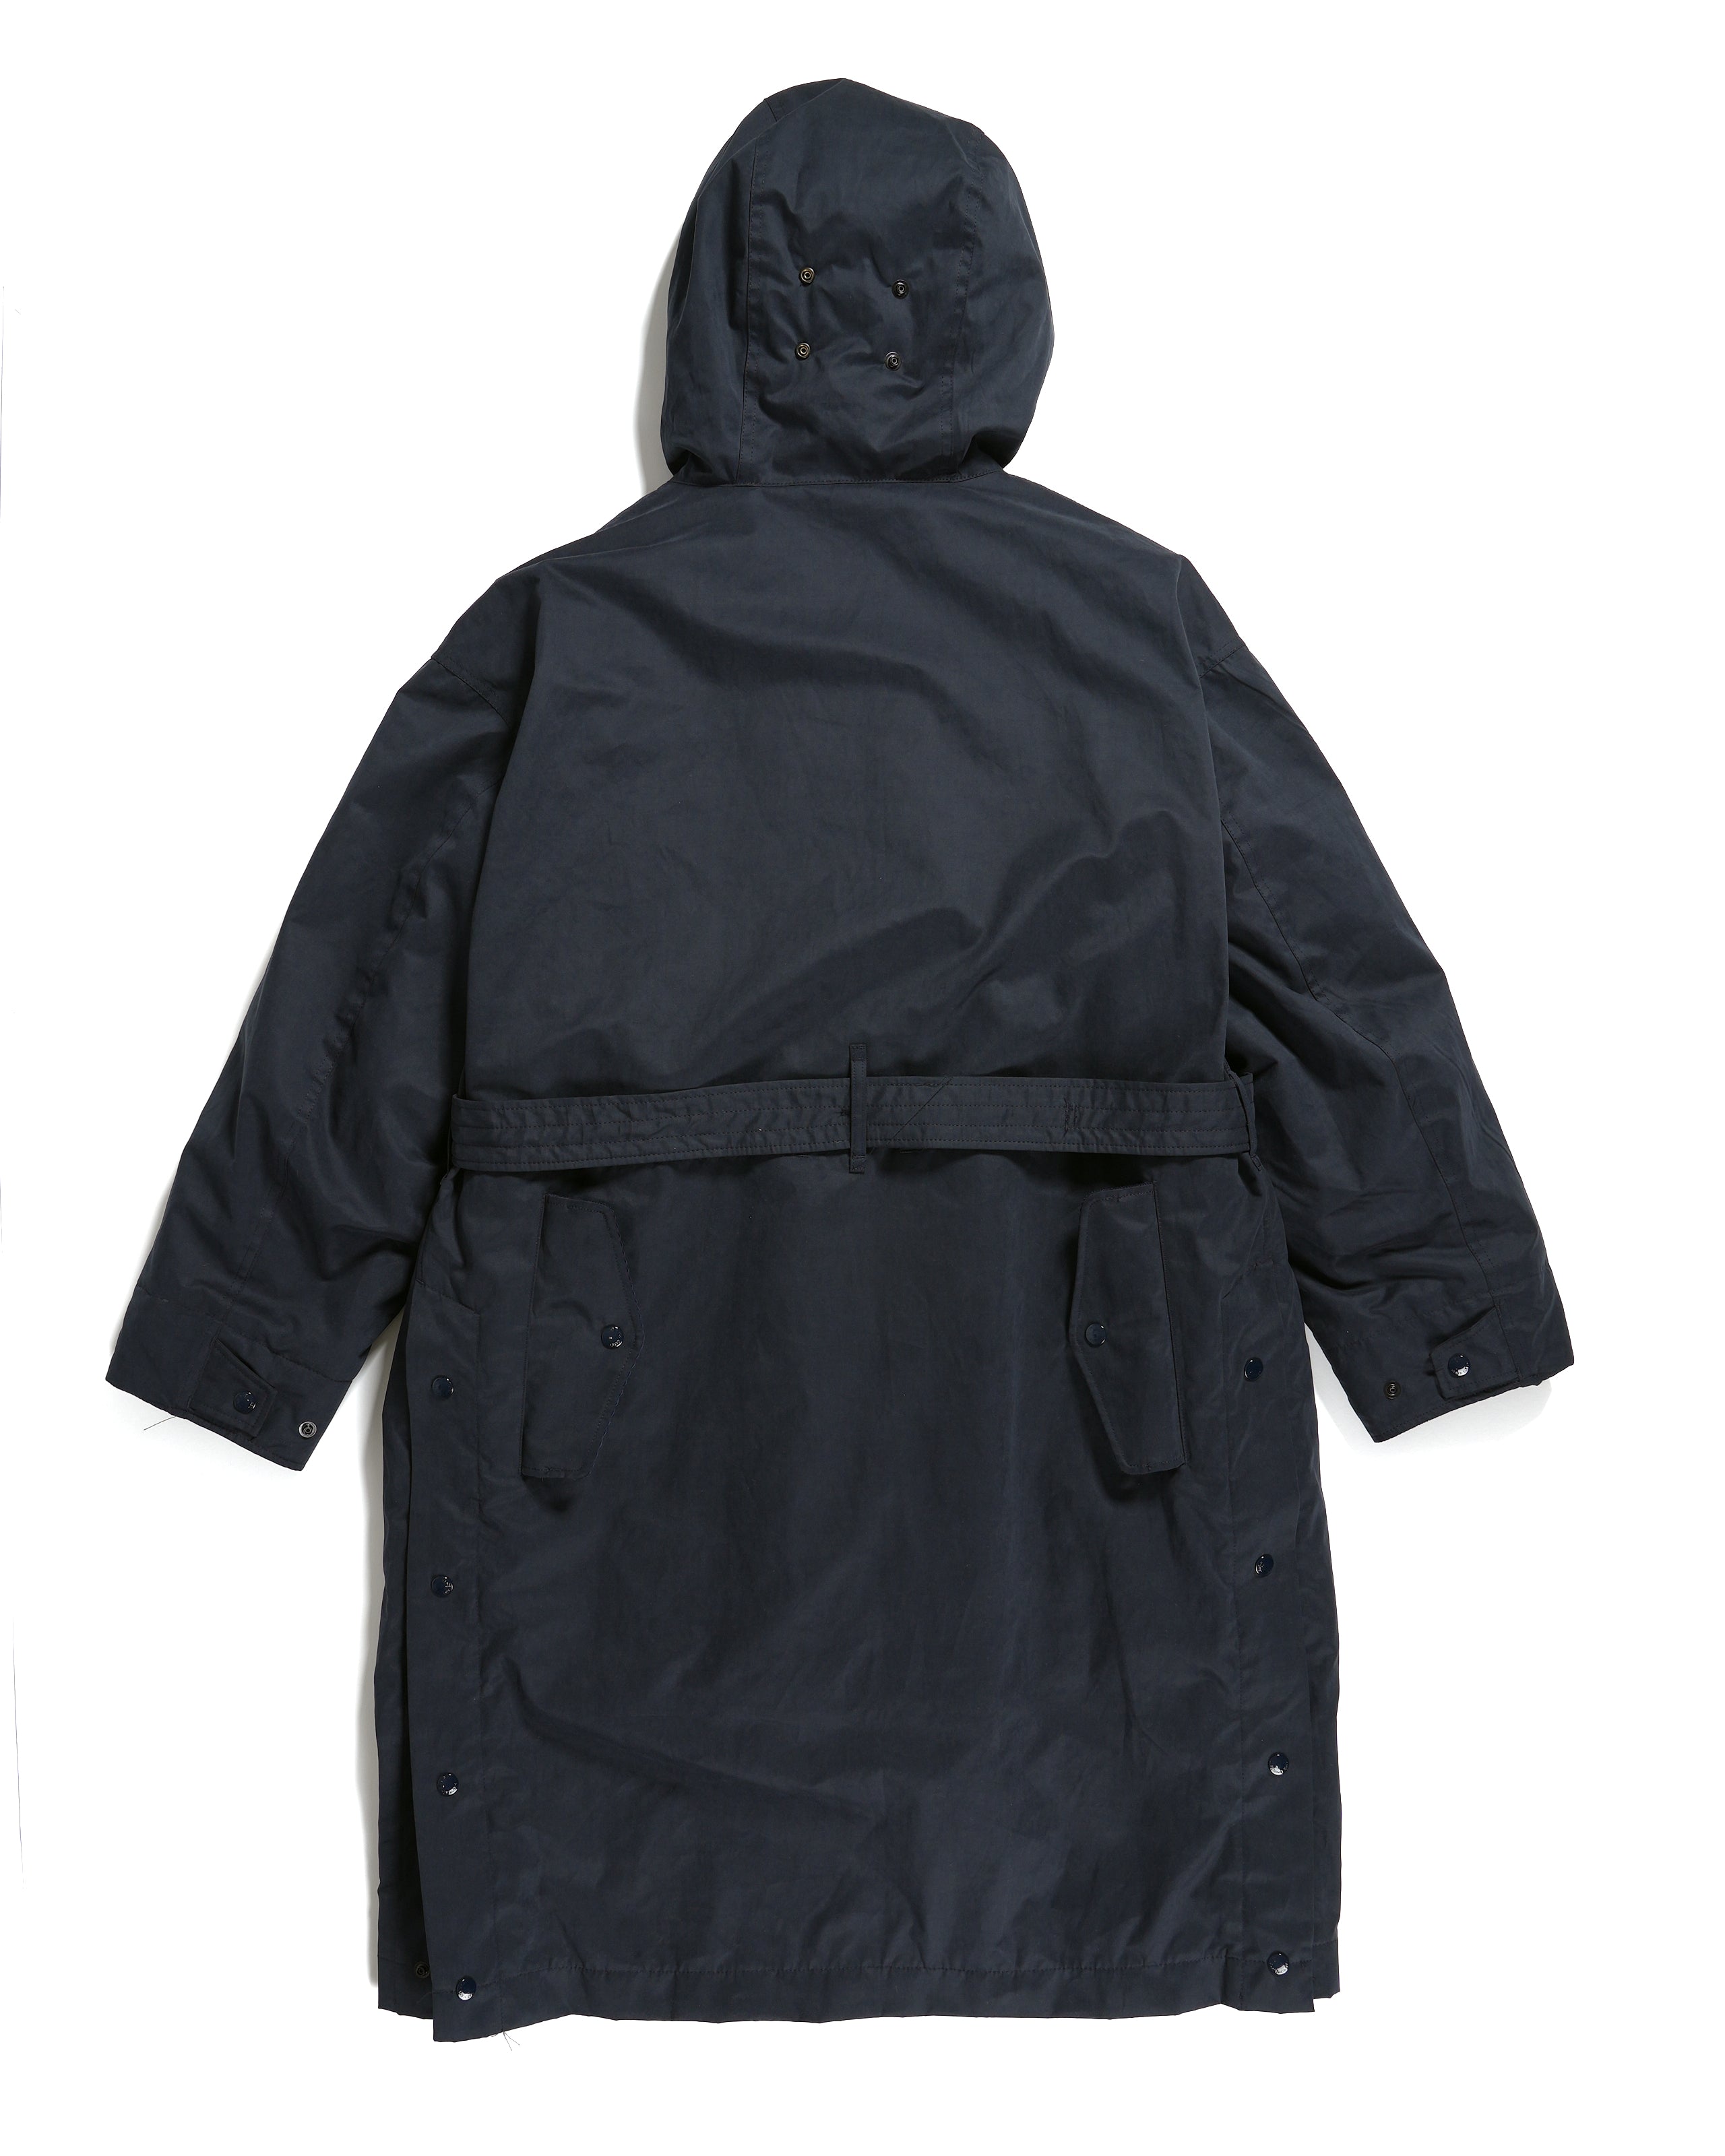 Storm Coat - Dk. Navy PC Coated Cloth